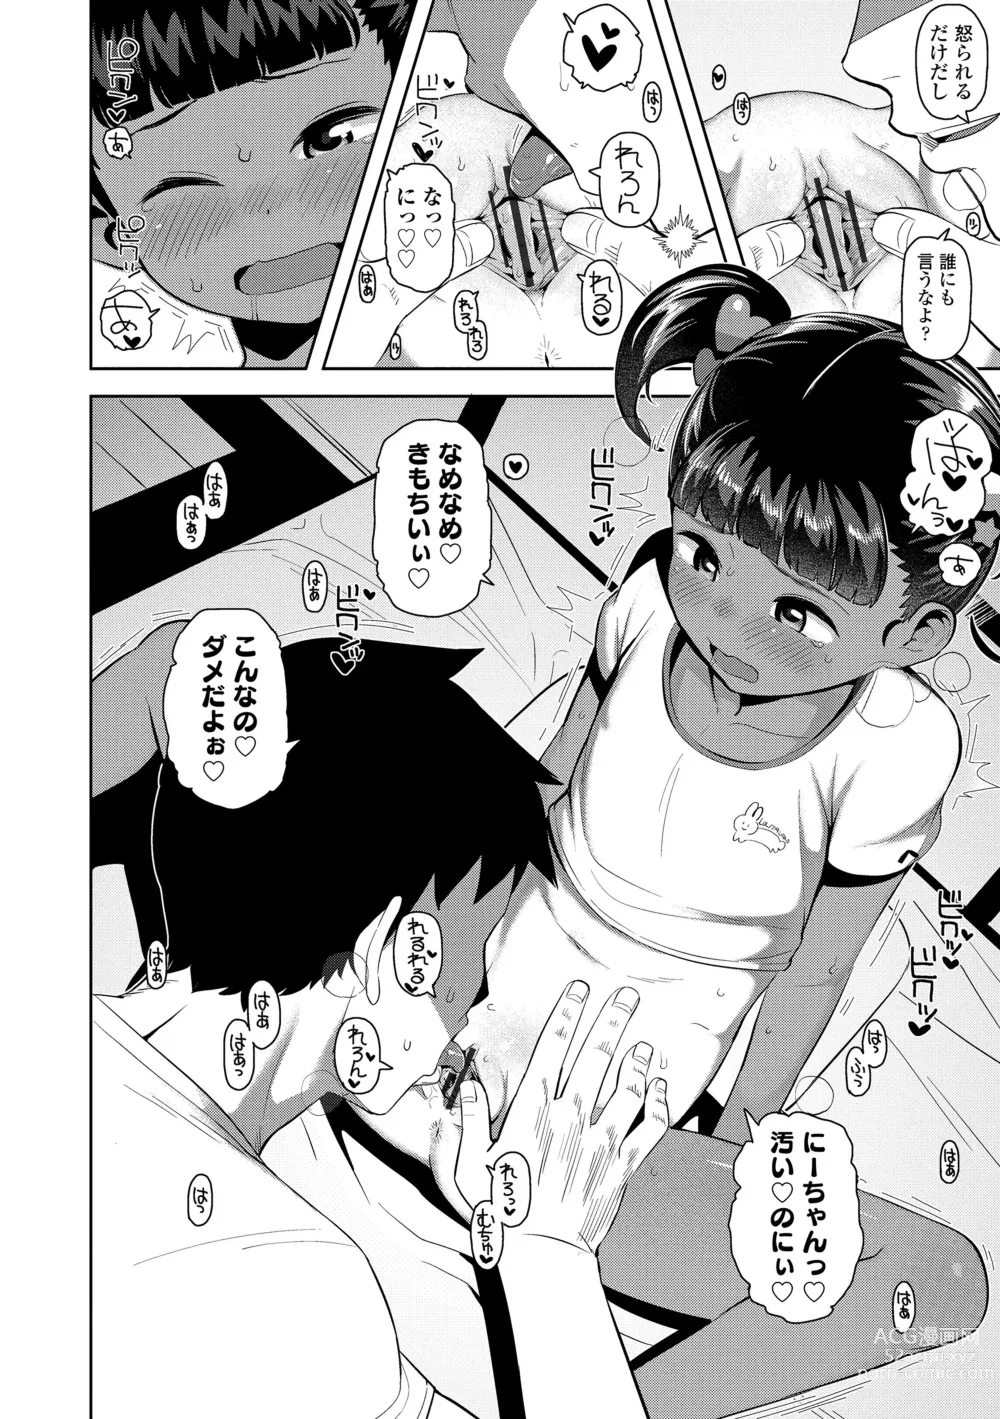 Page 178 of manga Chitchakute ohisama no nioi